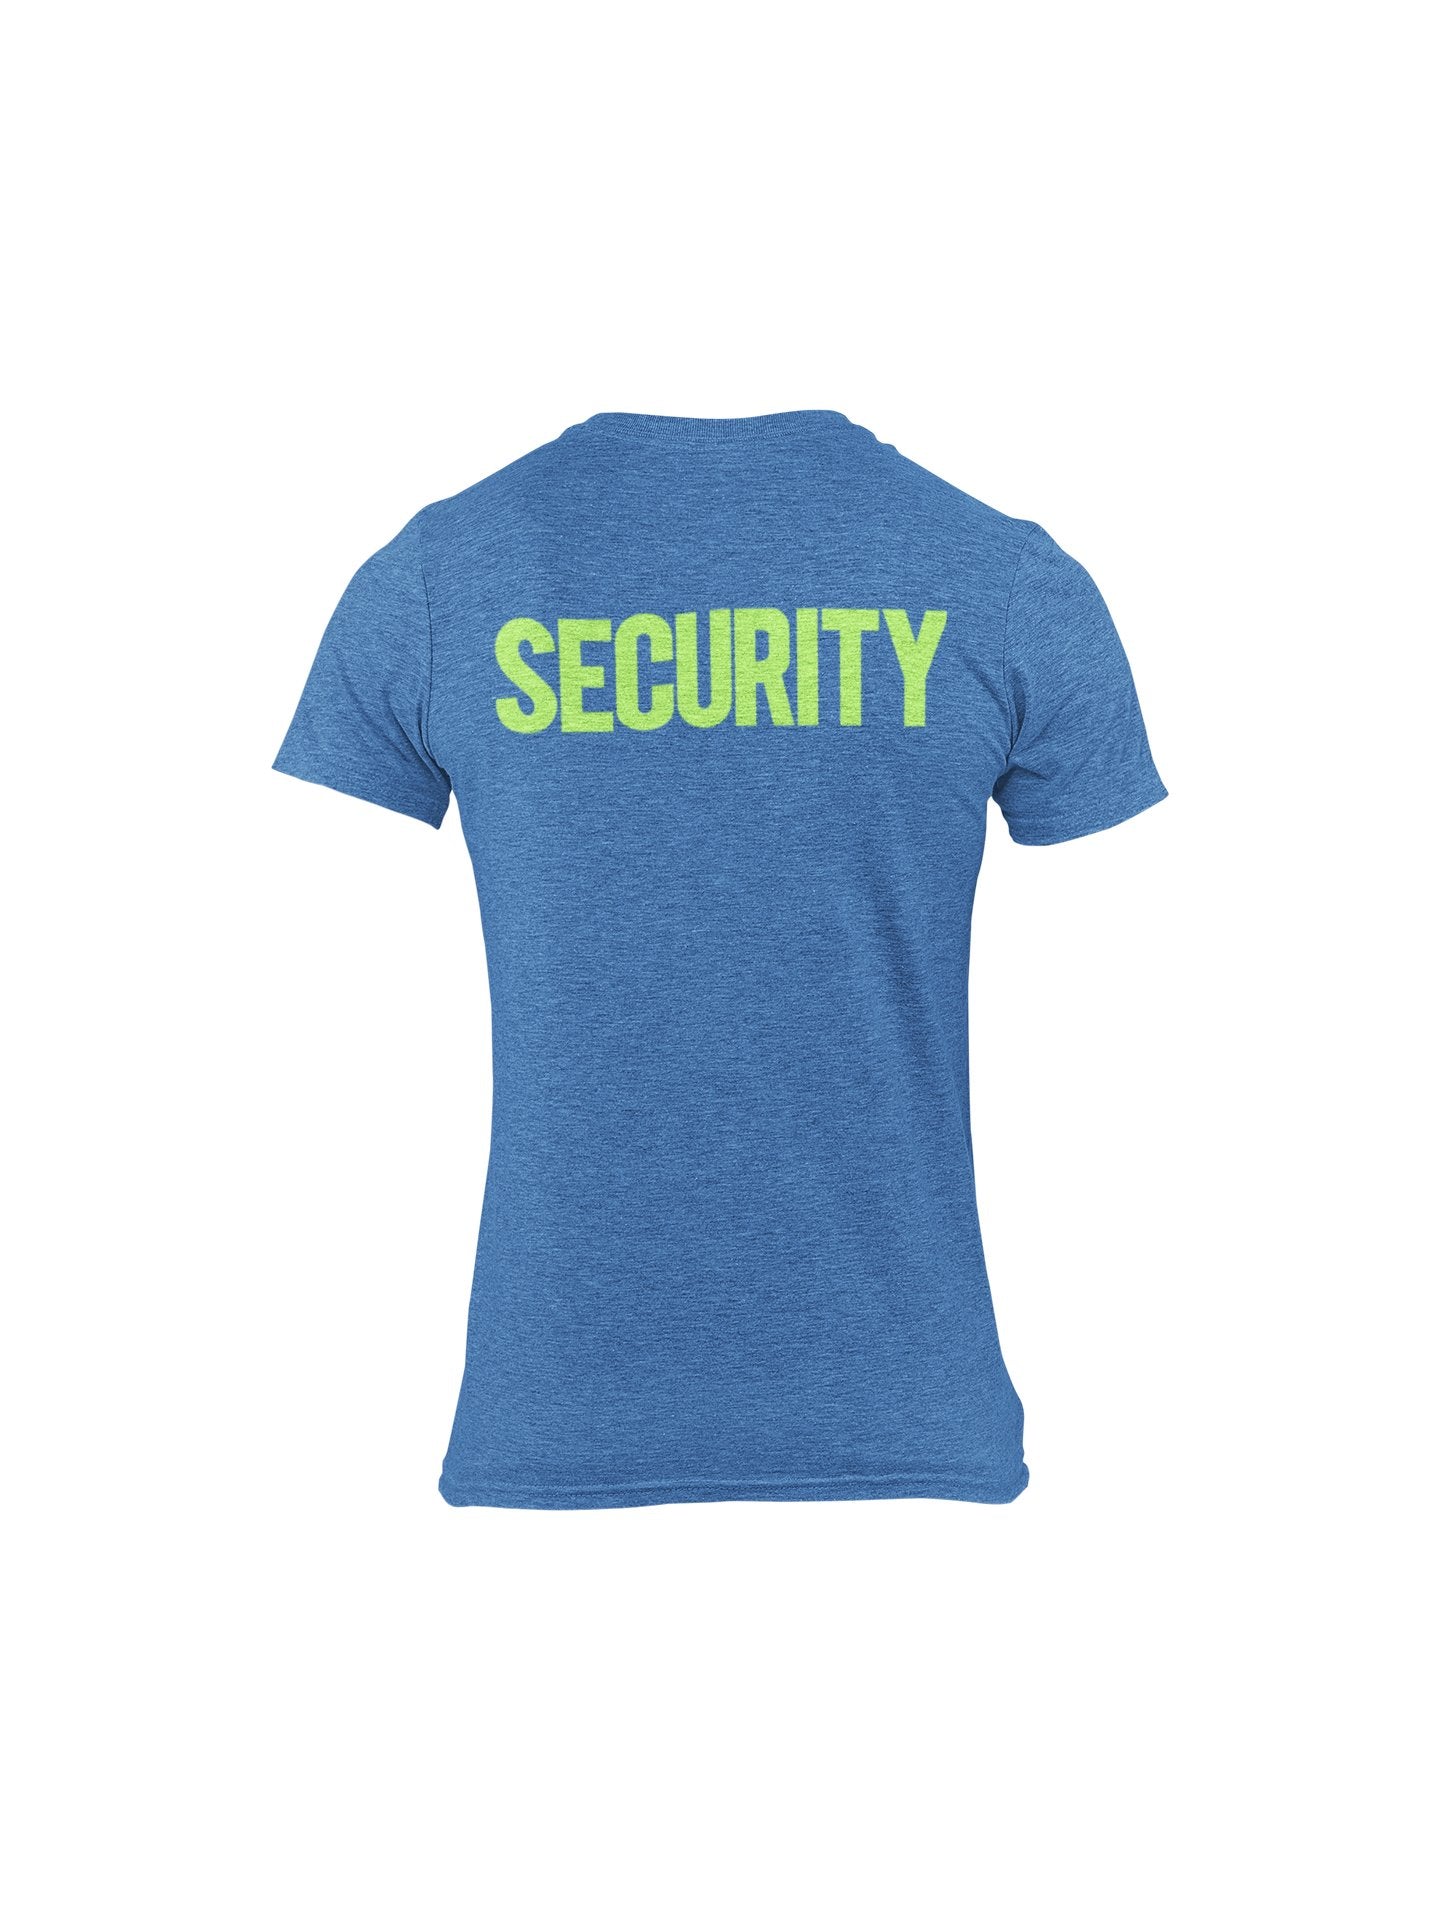 T-shirt de sécurité pour homme (conception unie, imprimé devant et dos, indigo chiné et néon)